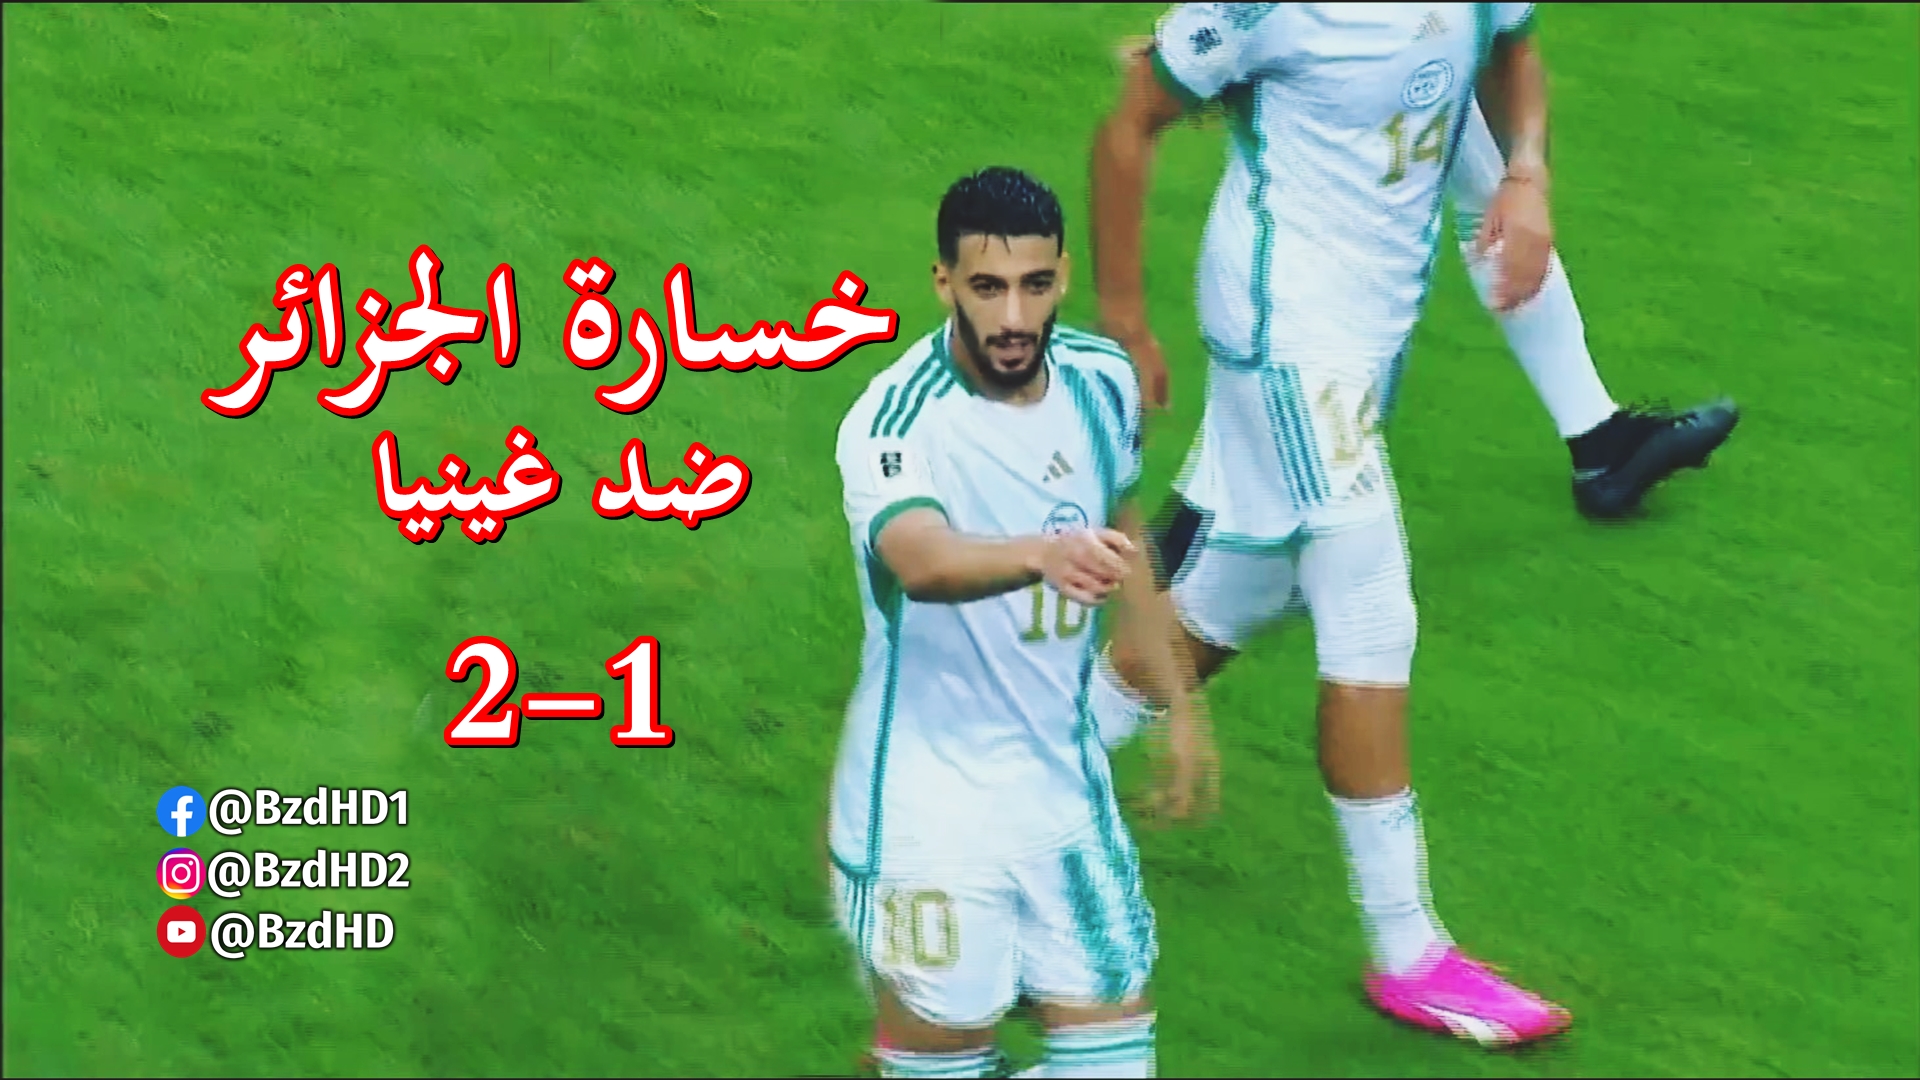 ملخص مباراة الجزائر و غينيا 1-2 تصفيات كاس العالم 2